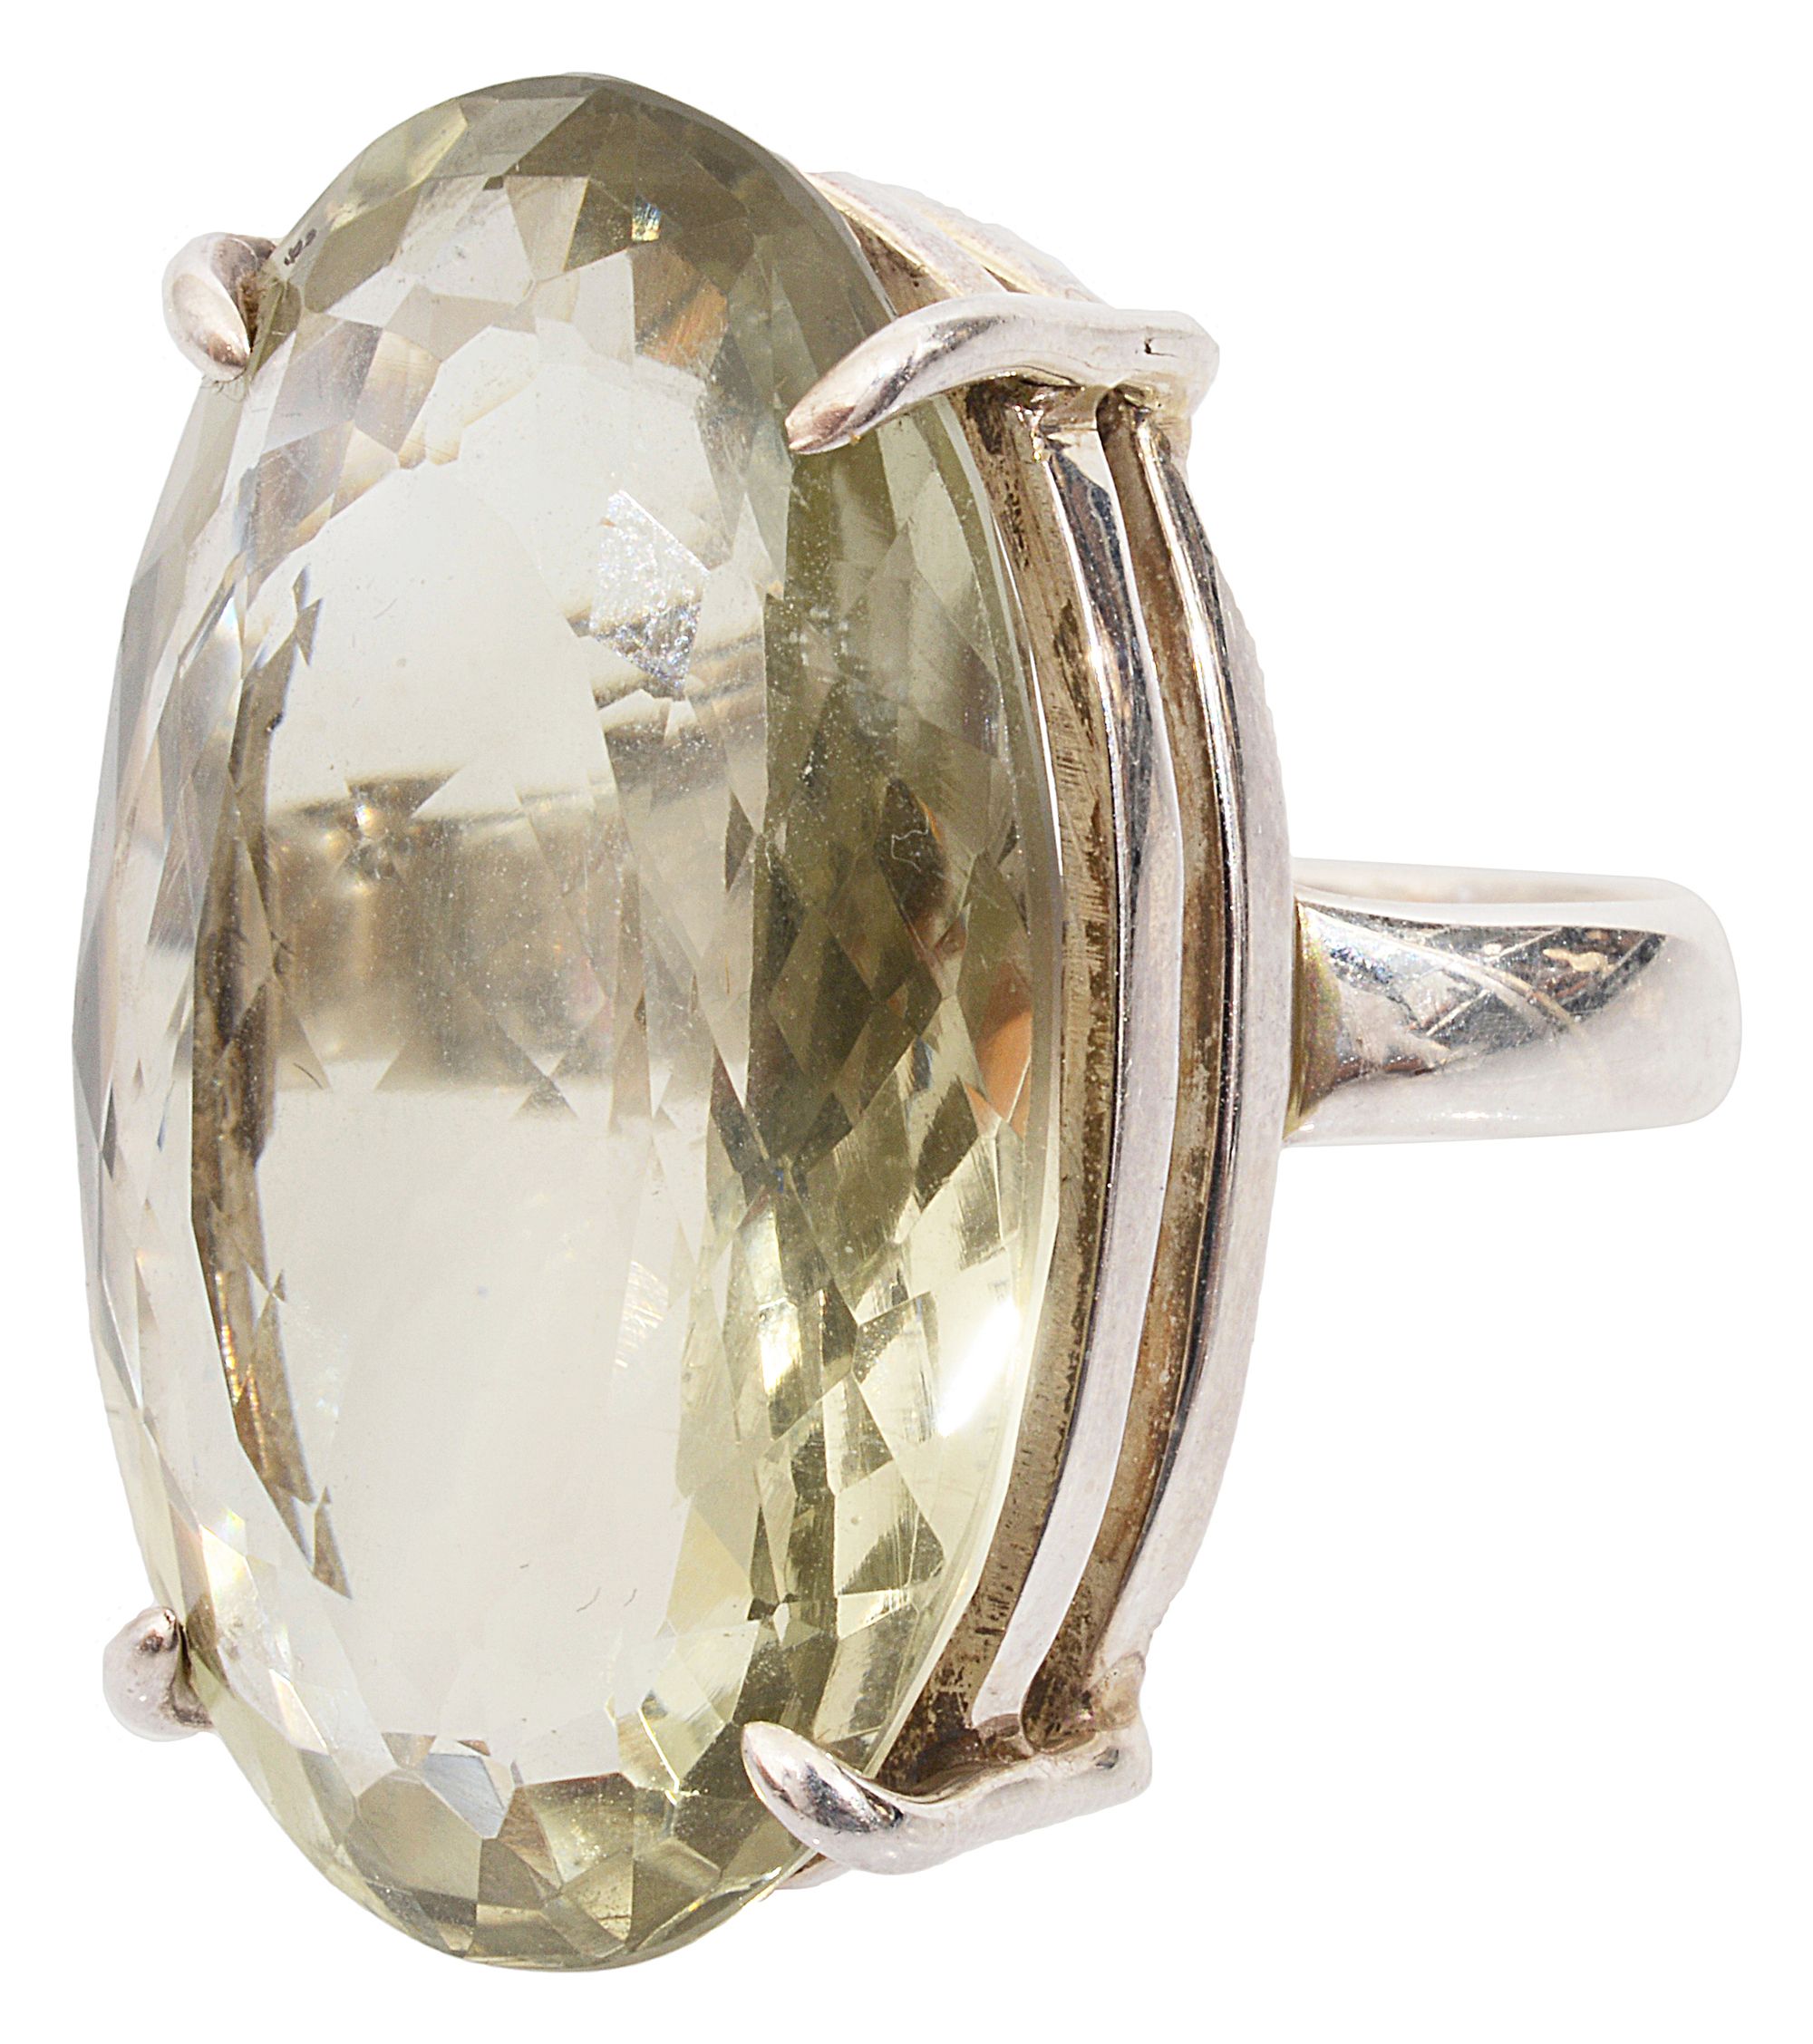 A quartz dress ring